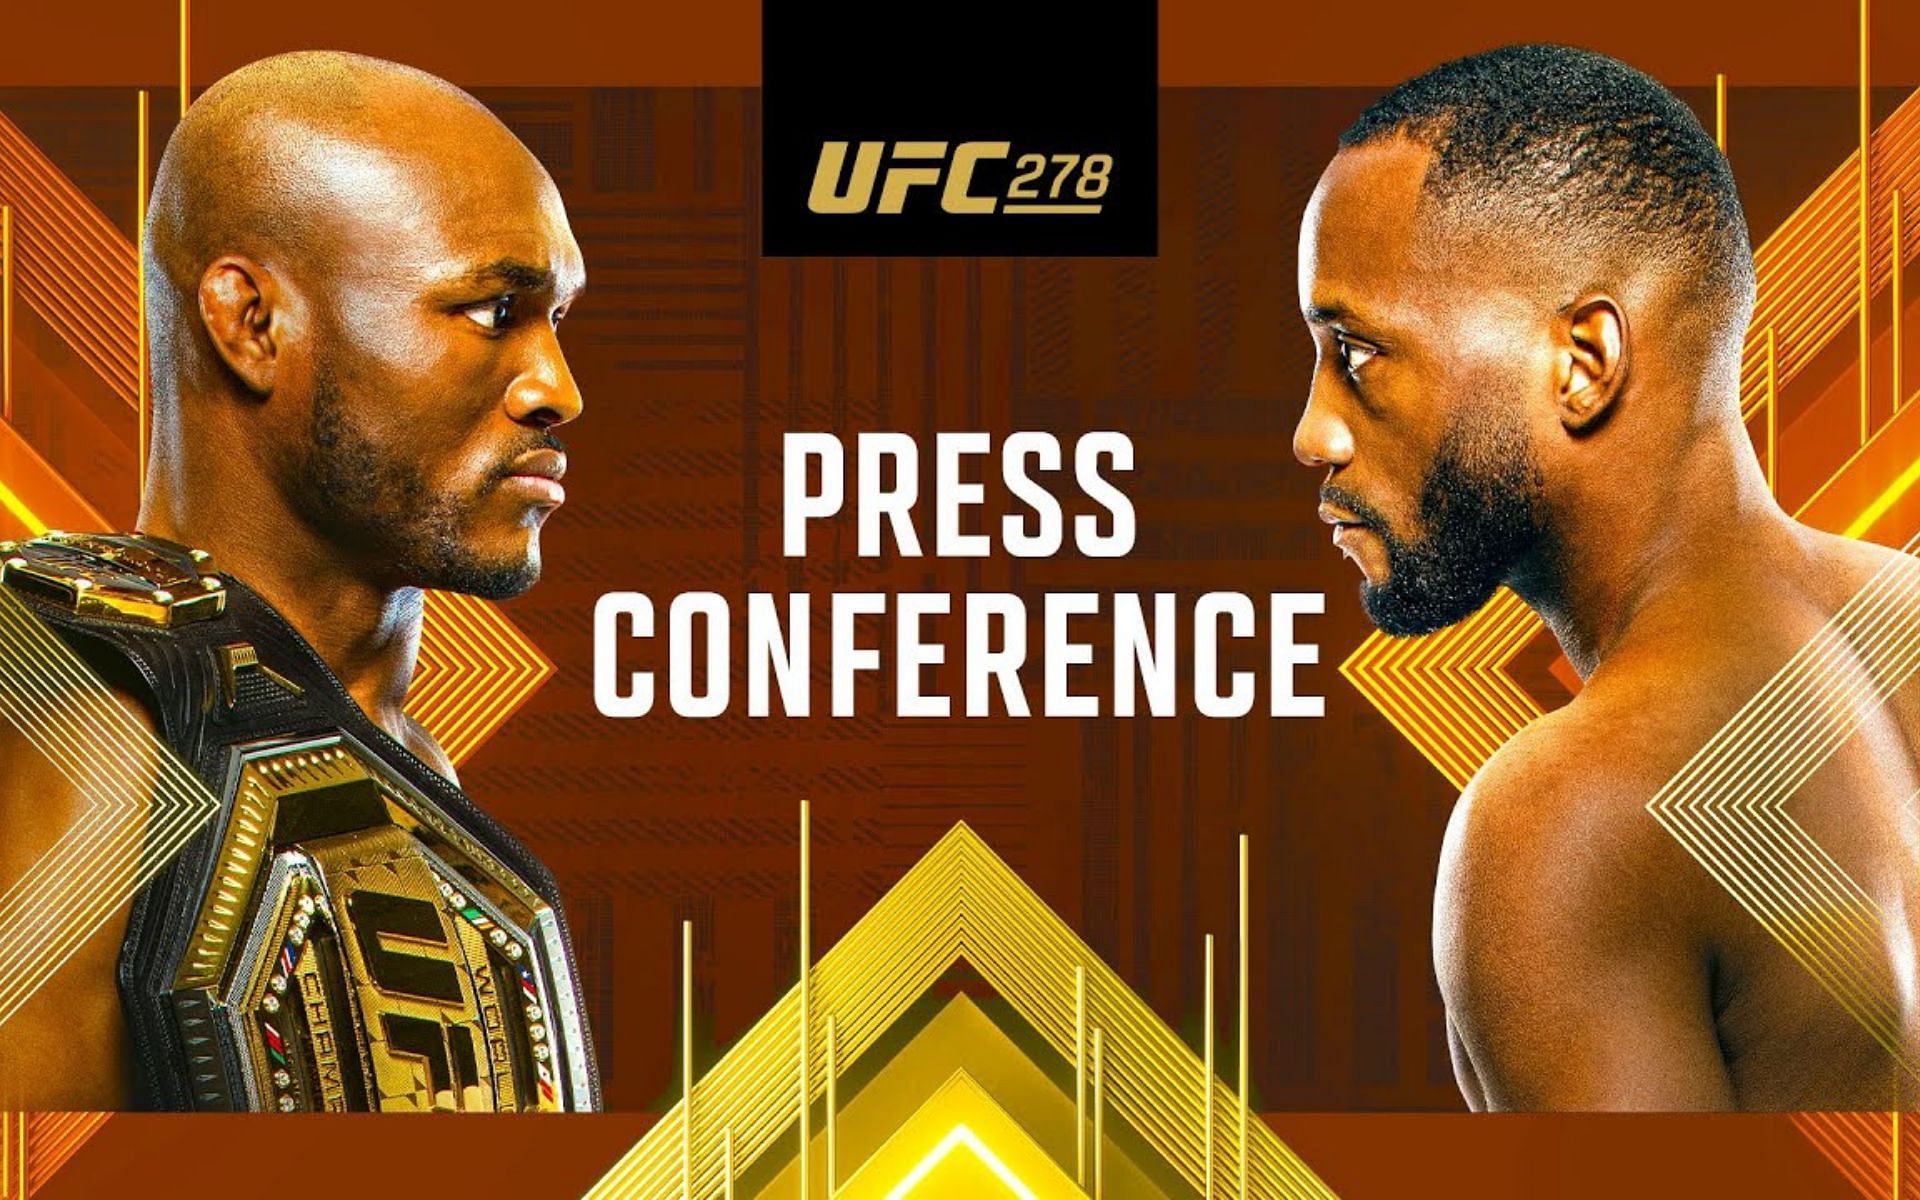 UFC 278: Usman vs. Edwards 2 poster [Image courtesy: UFC via YouTube]